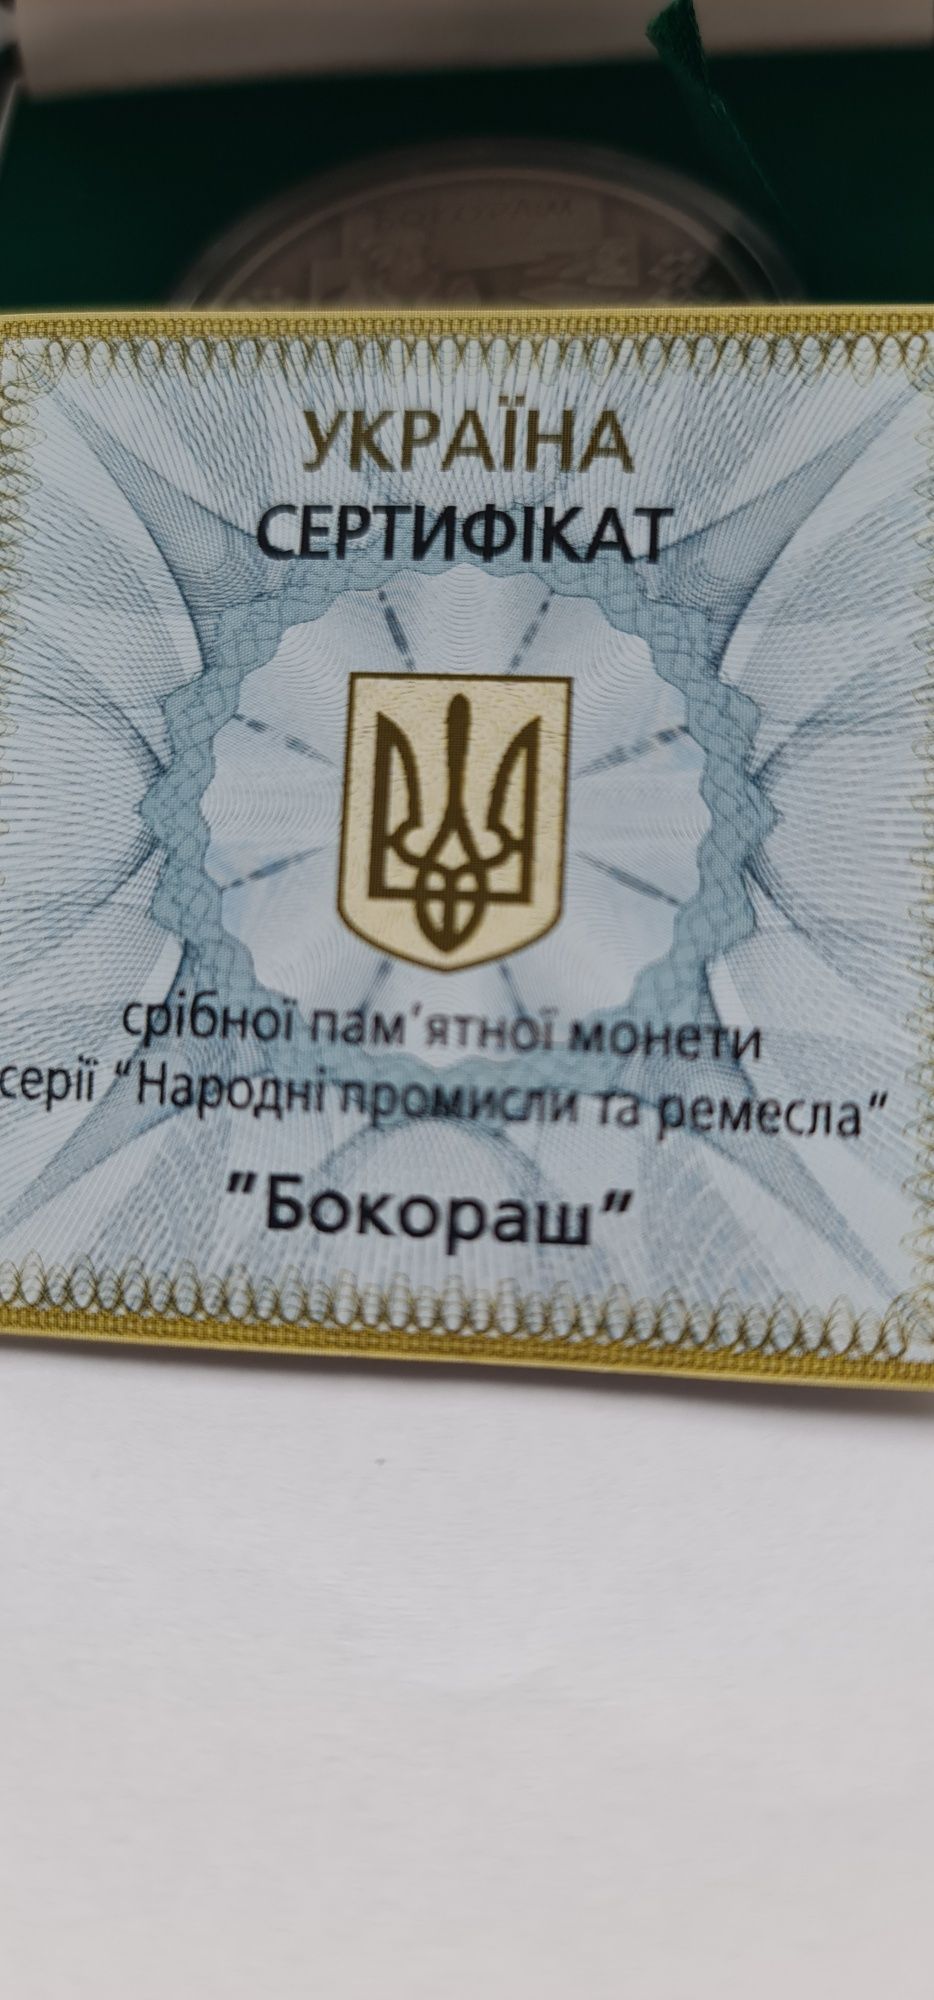 Срібна монета Бокораш 2009